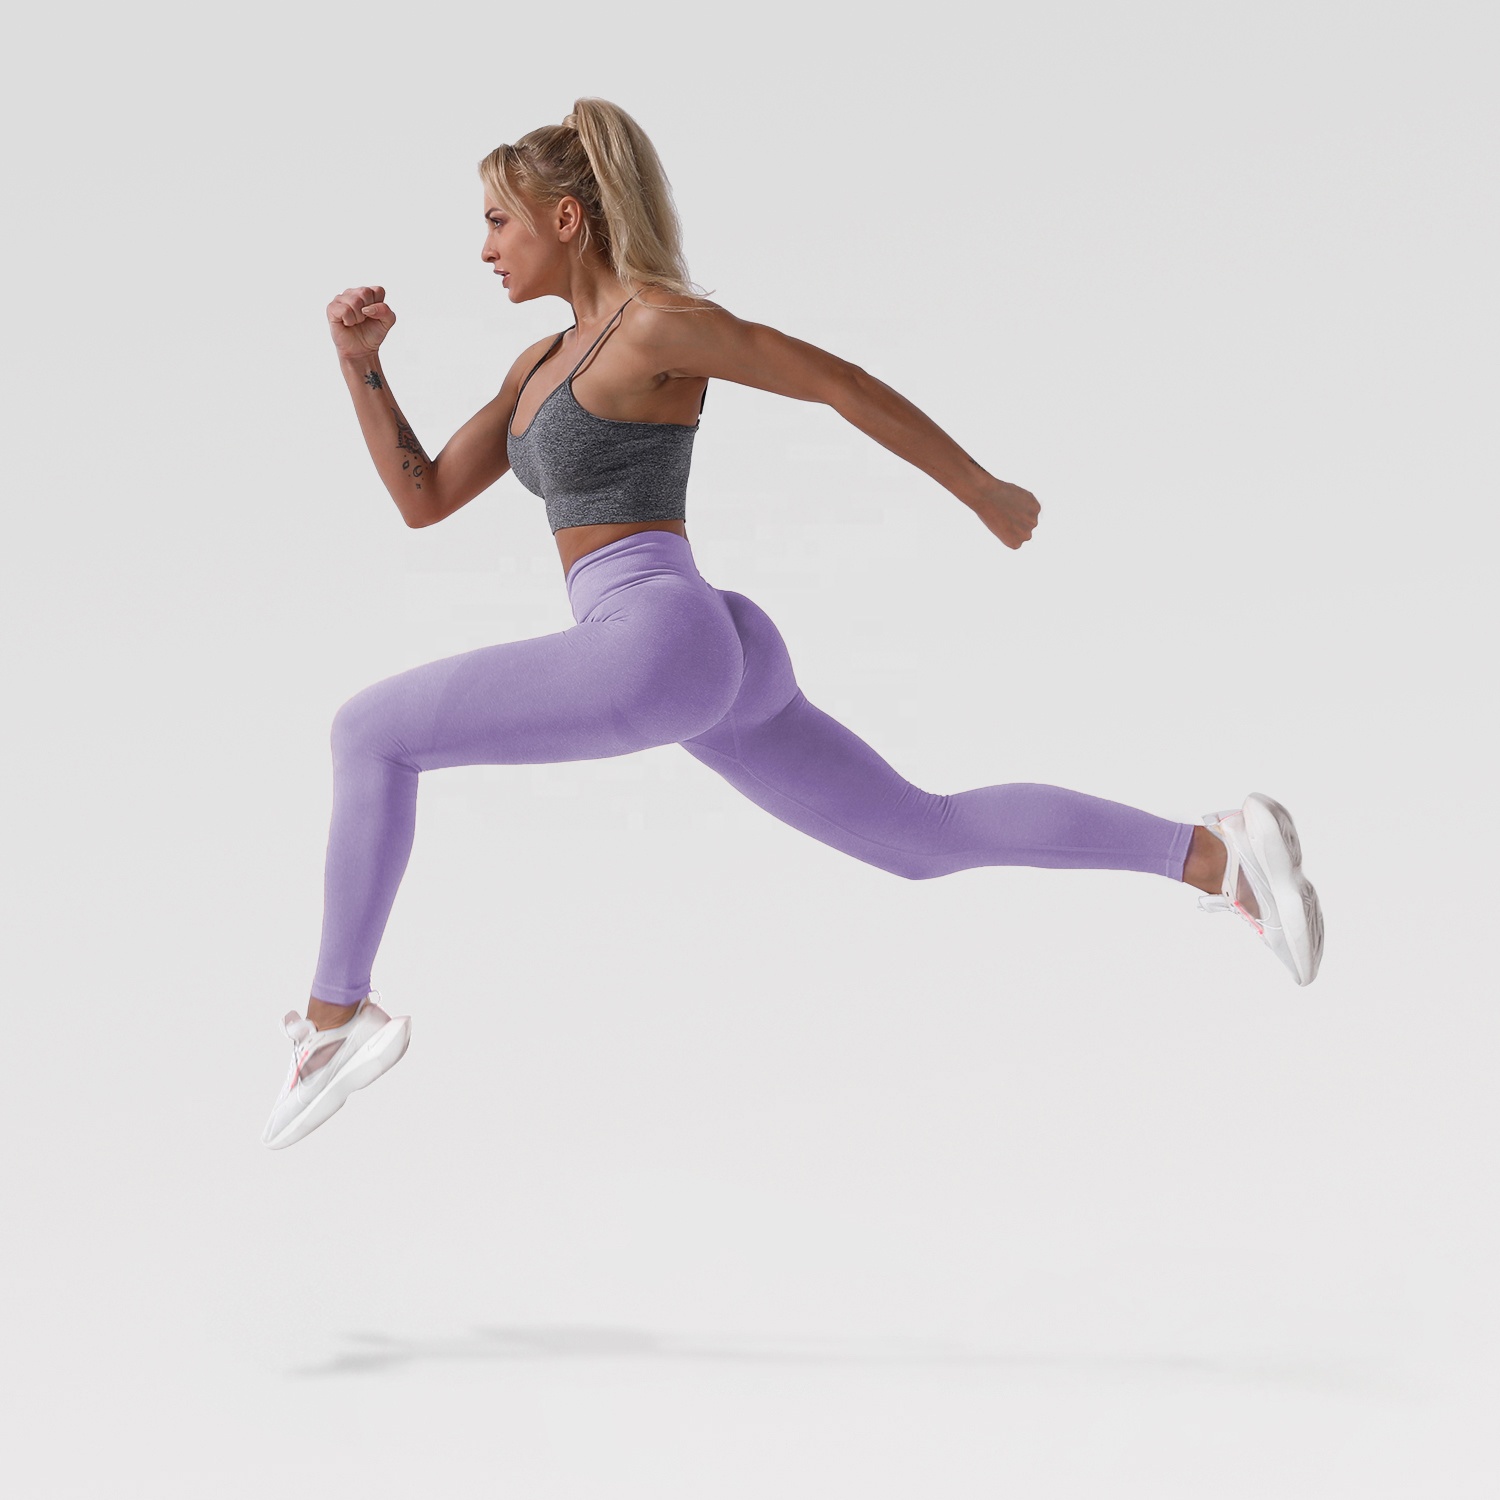 Wholesale plain blank sport leggings super light running jogger pants for women lady girl custom your logo